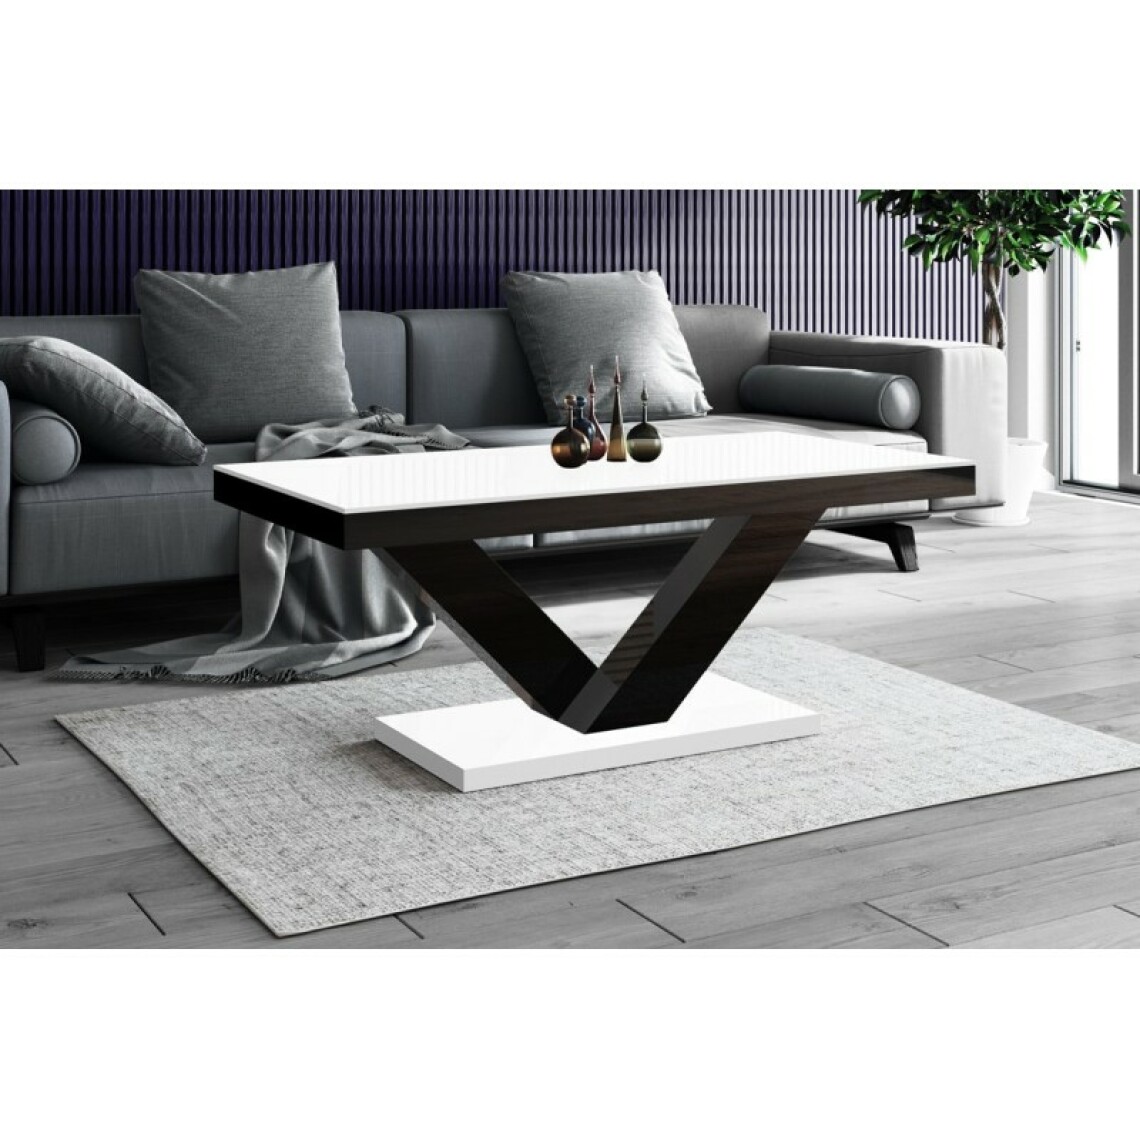 Carellia - Table basse design 120 cm x 60 cm x 49 cm - Blanc/Noir - Tables basses